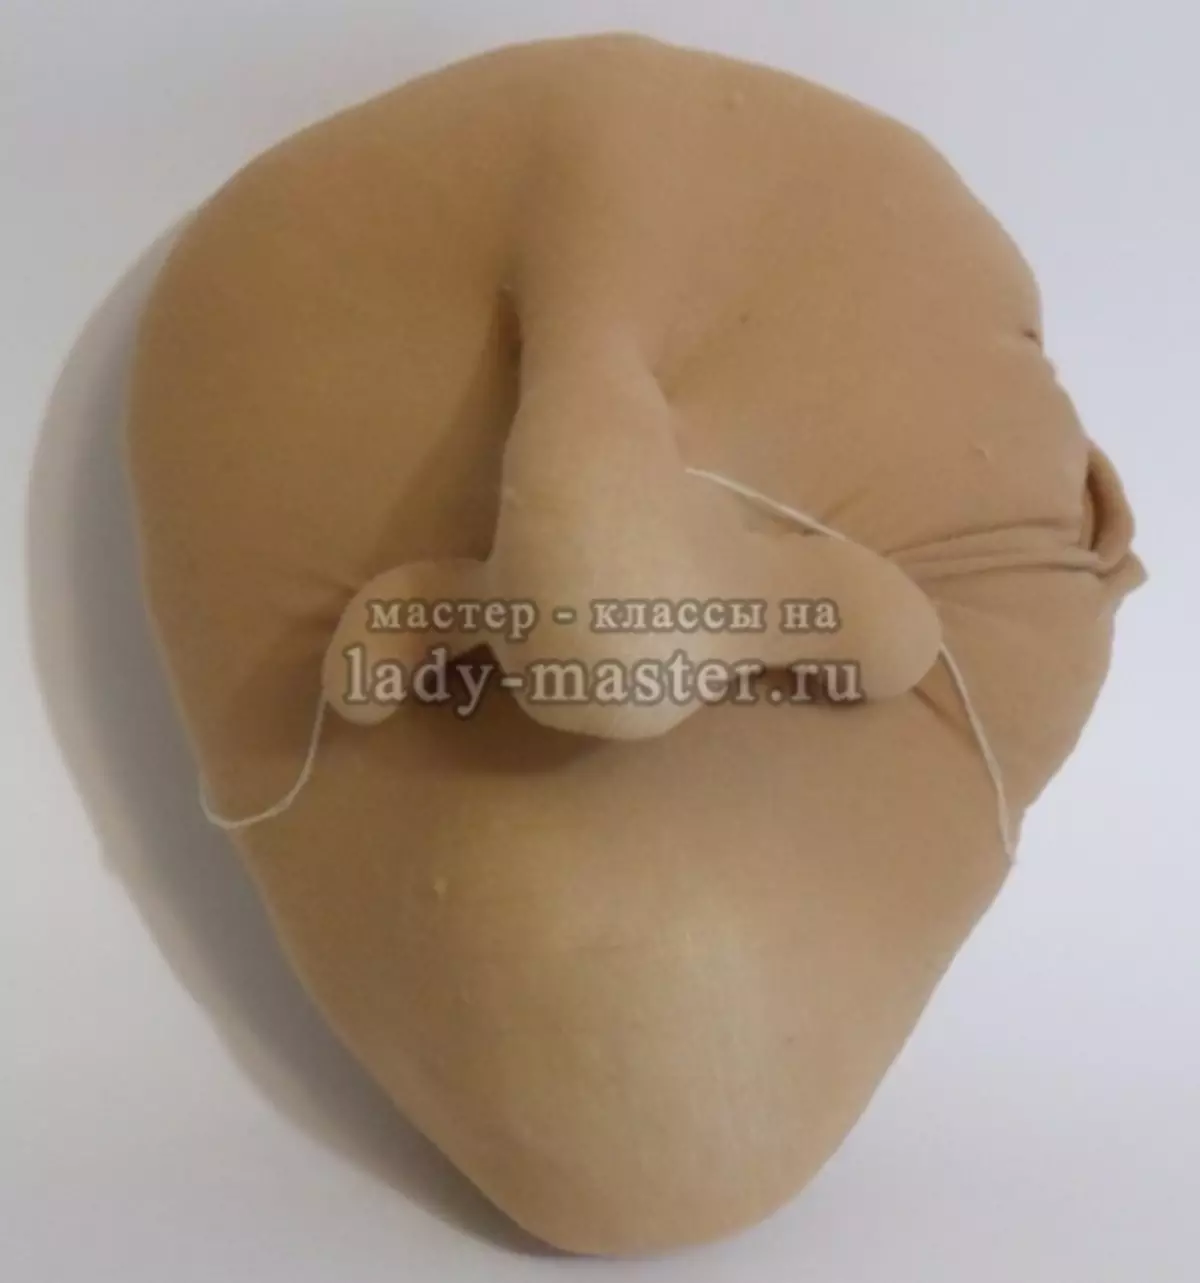 O nariz de mulheres de Yaga com as mãos do papel na técnica de Papier-Masha com uma foto